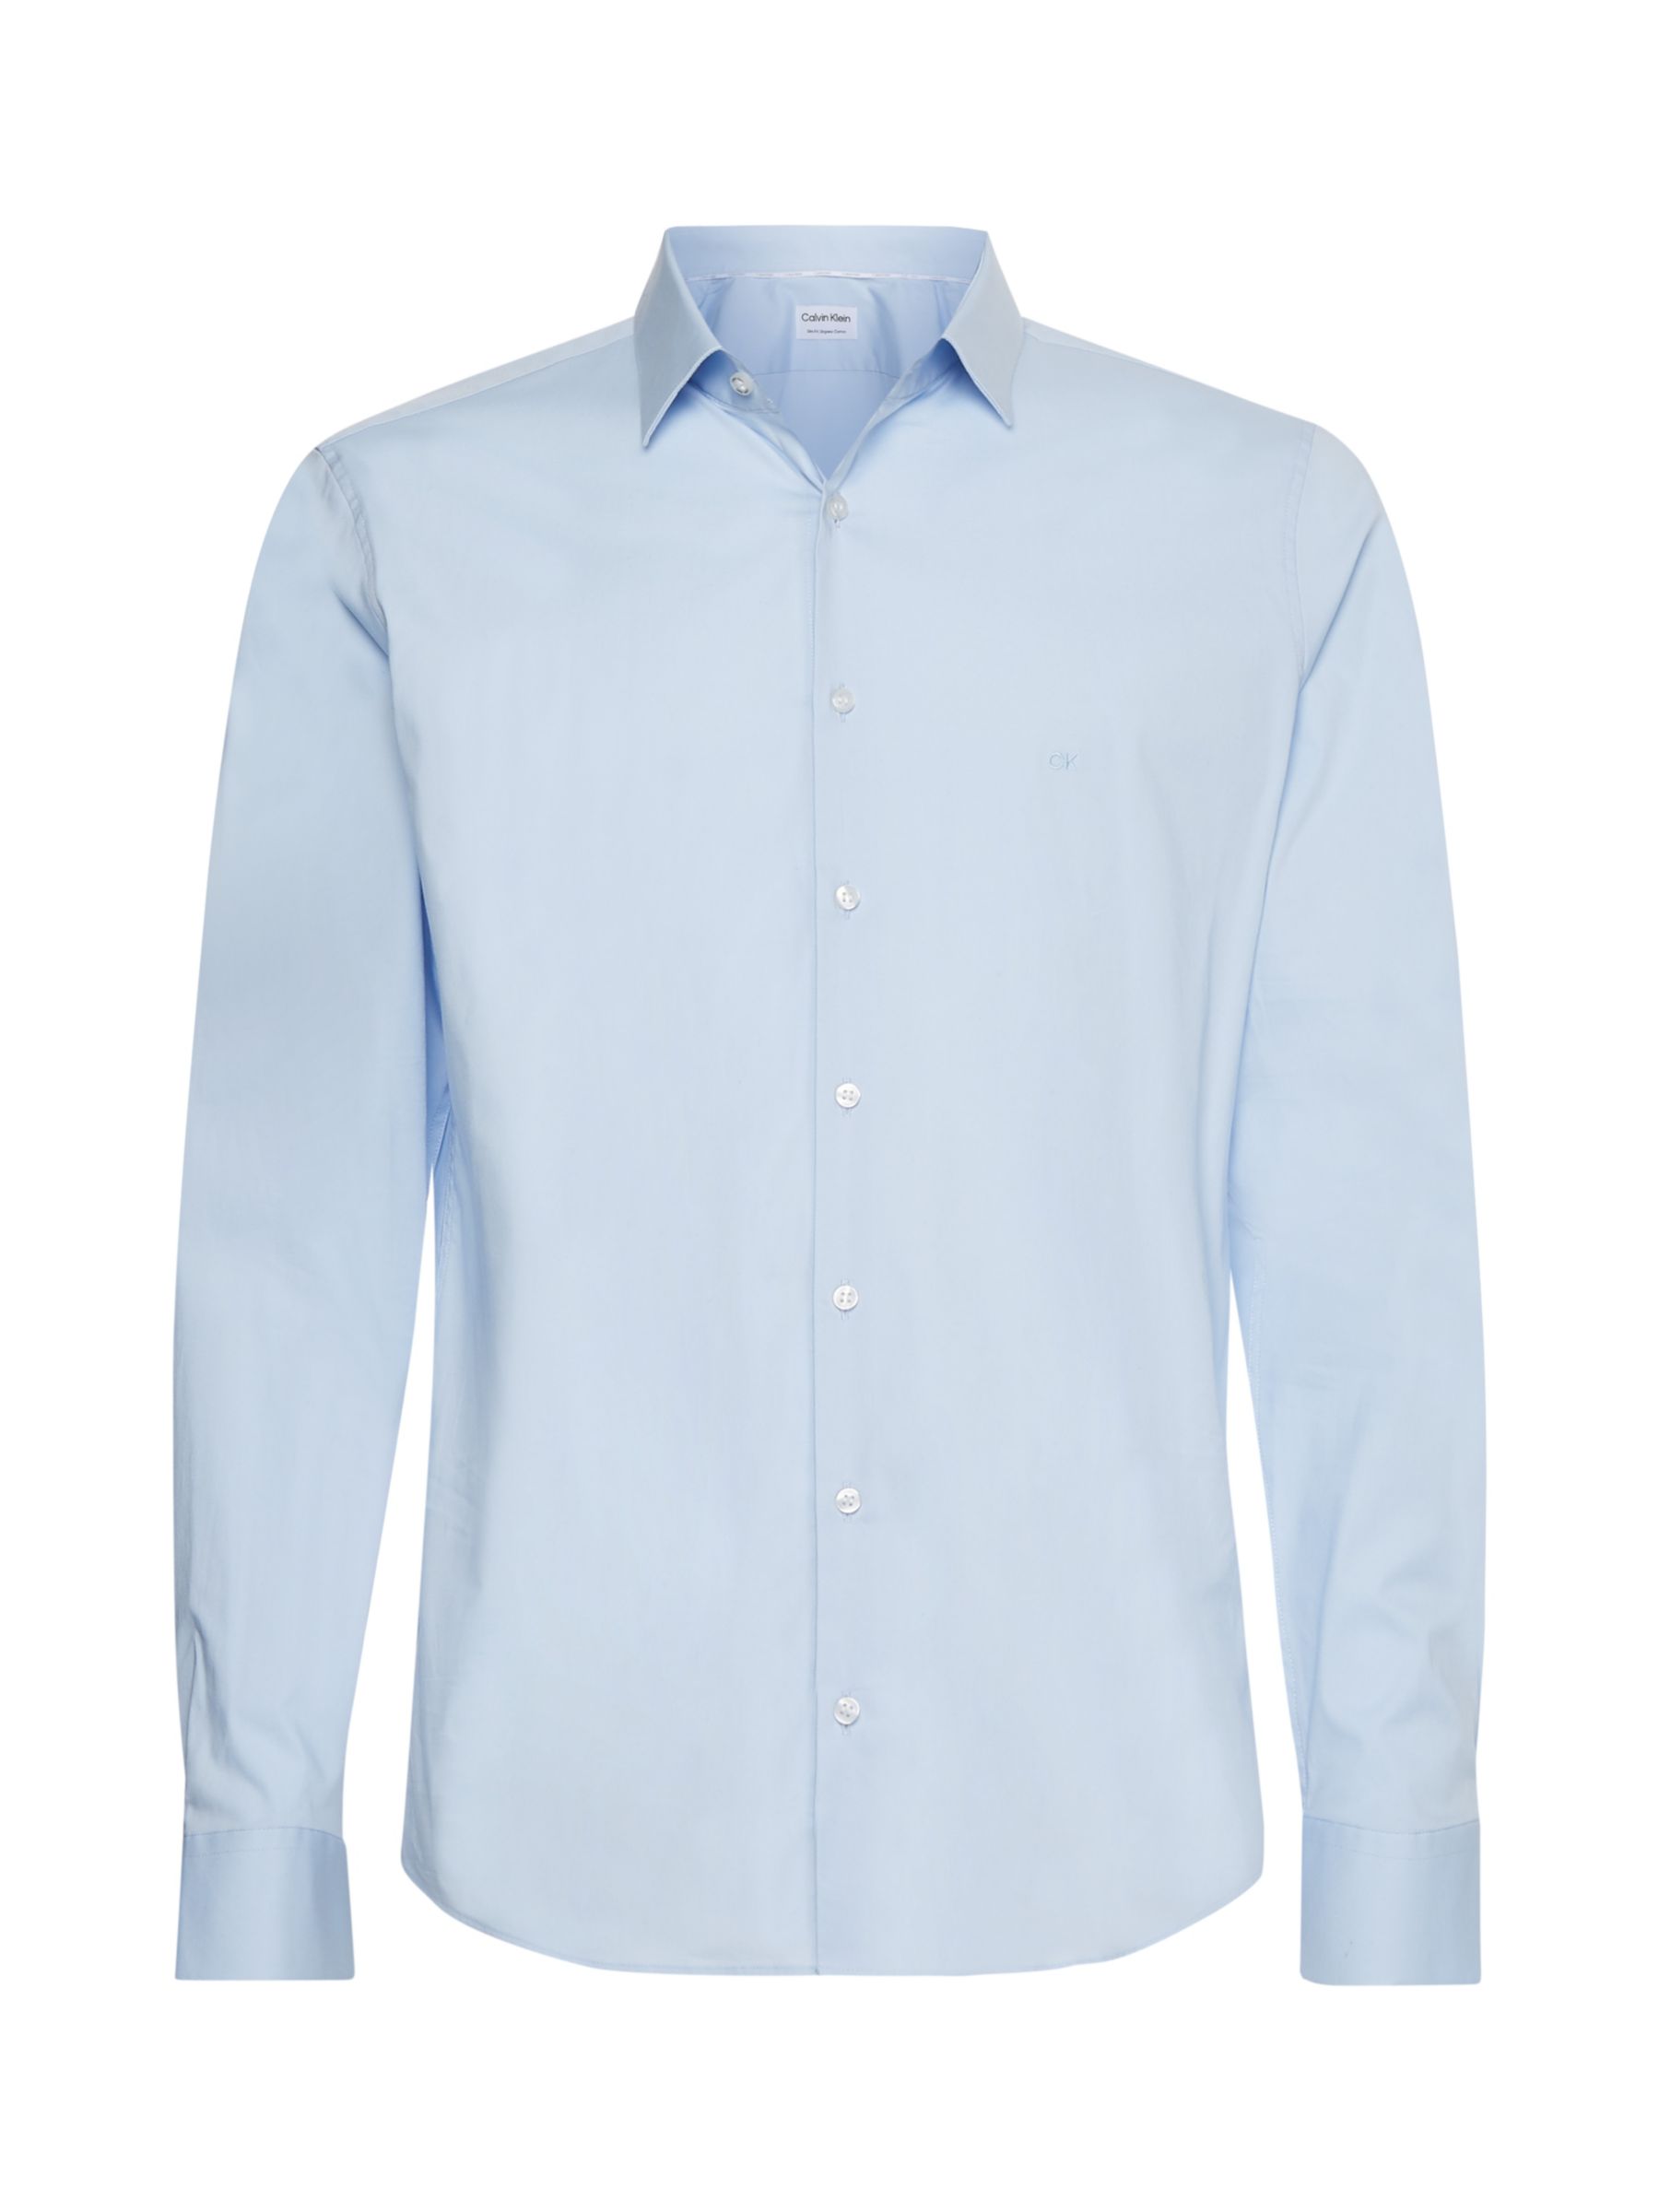 Calvin Klein Cotton Poplin Slim Fit Shirt, Calm Blue, 38R